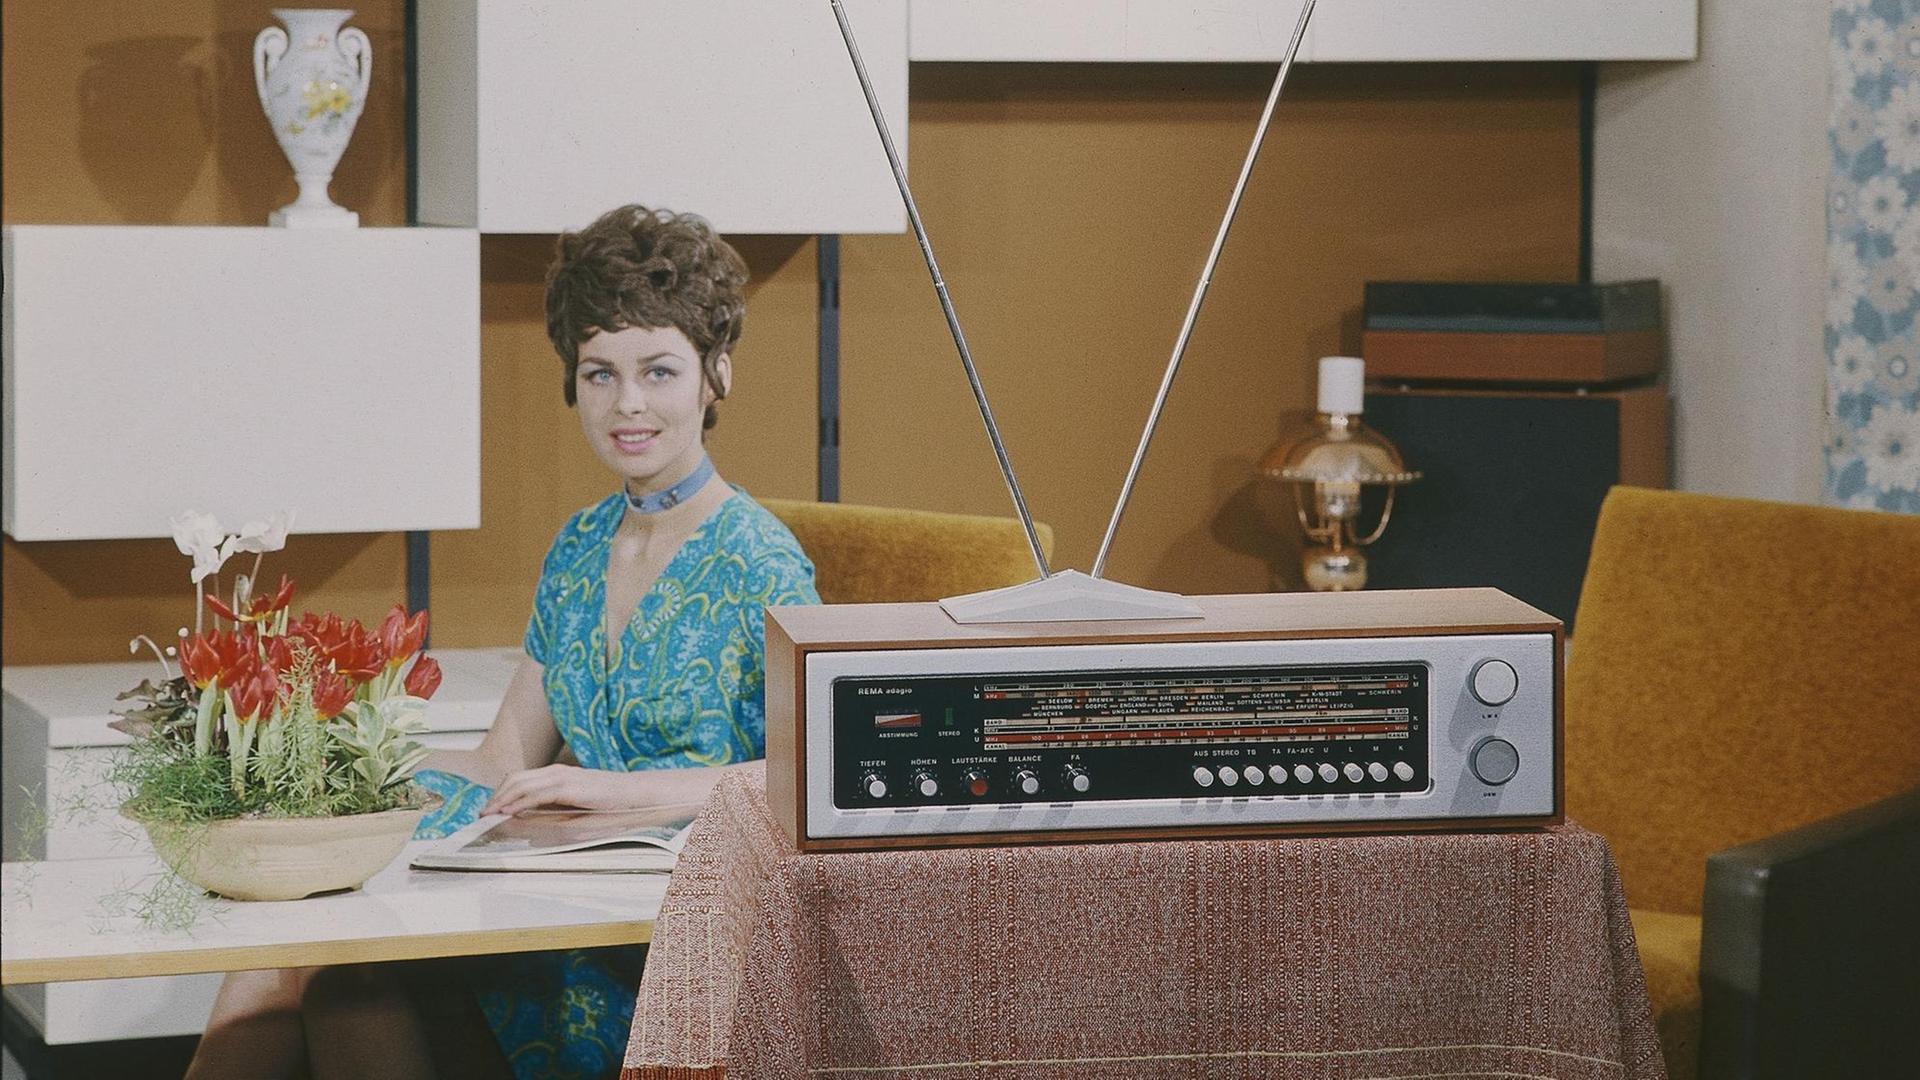 Eine junge Frau sitzt in einem Siebzigerjahre-Wohnzimmer an einem Tisch, im Vordergrund steht ein Radiogeraet REMA adagio.